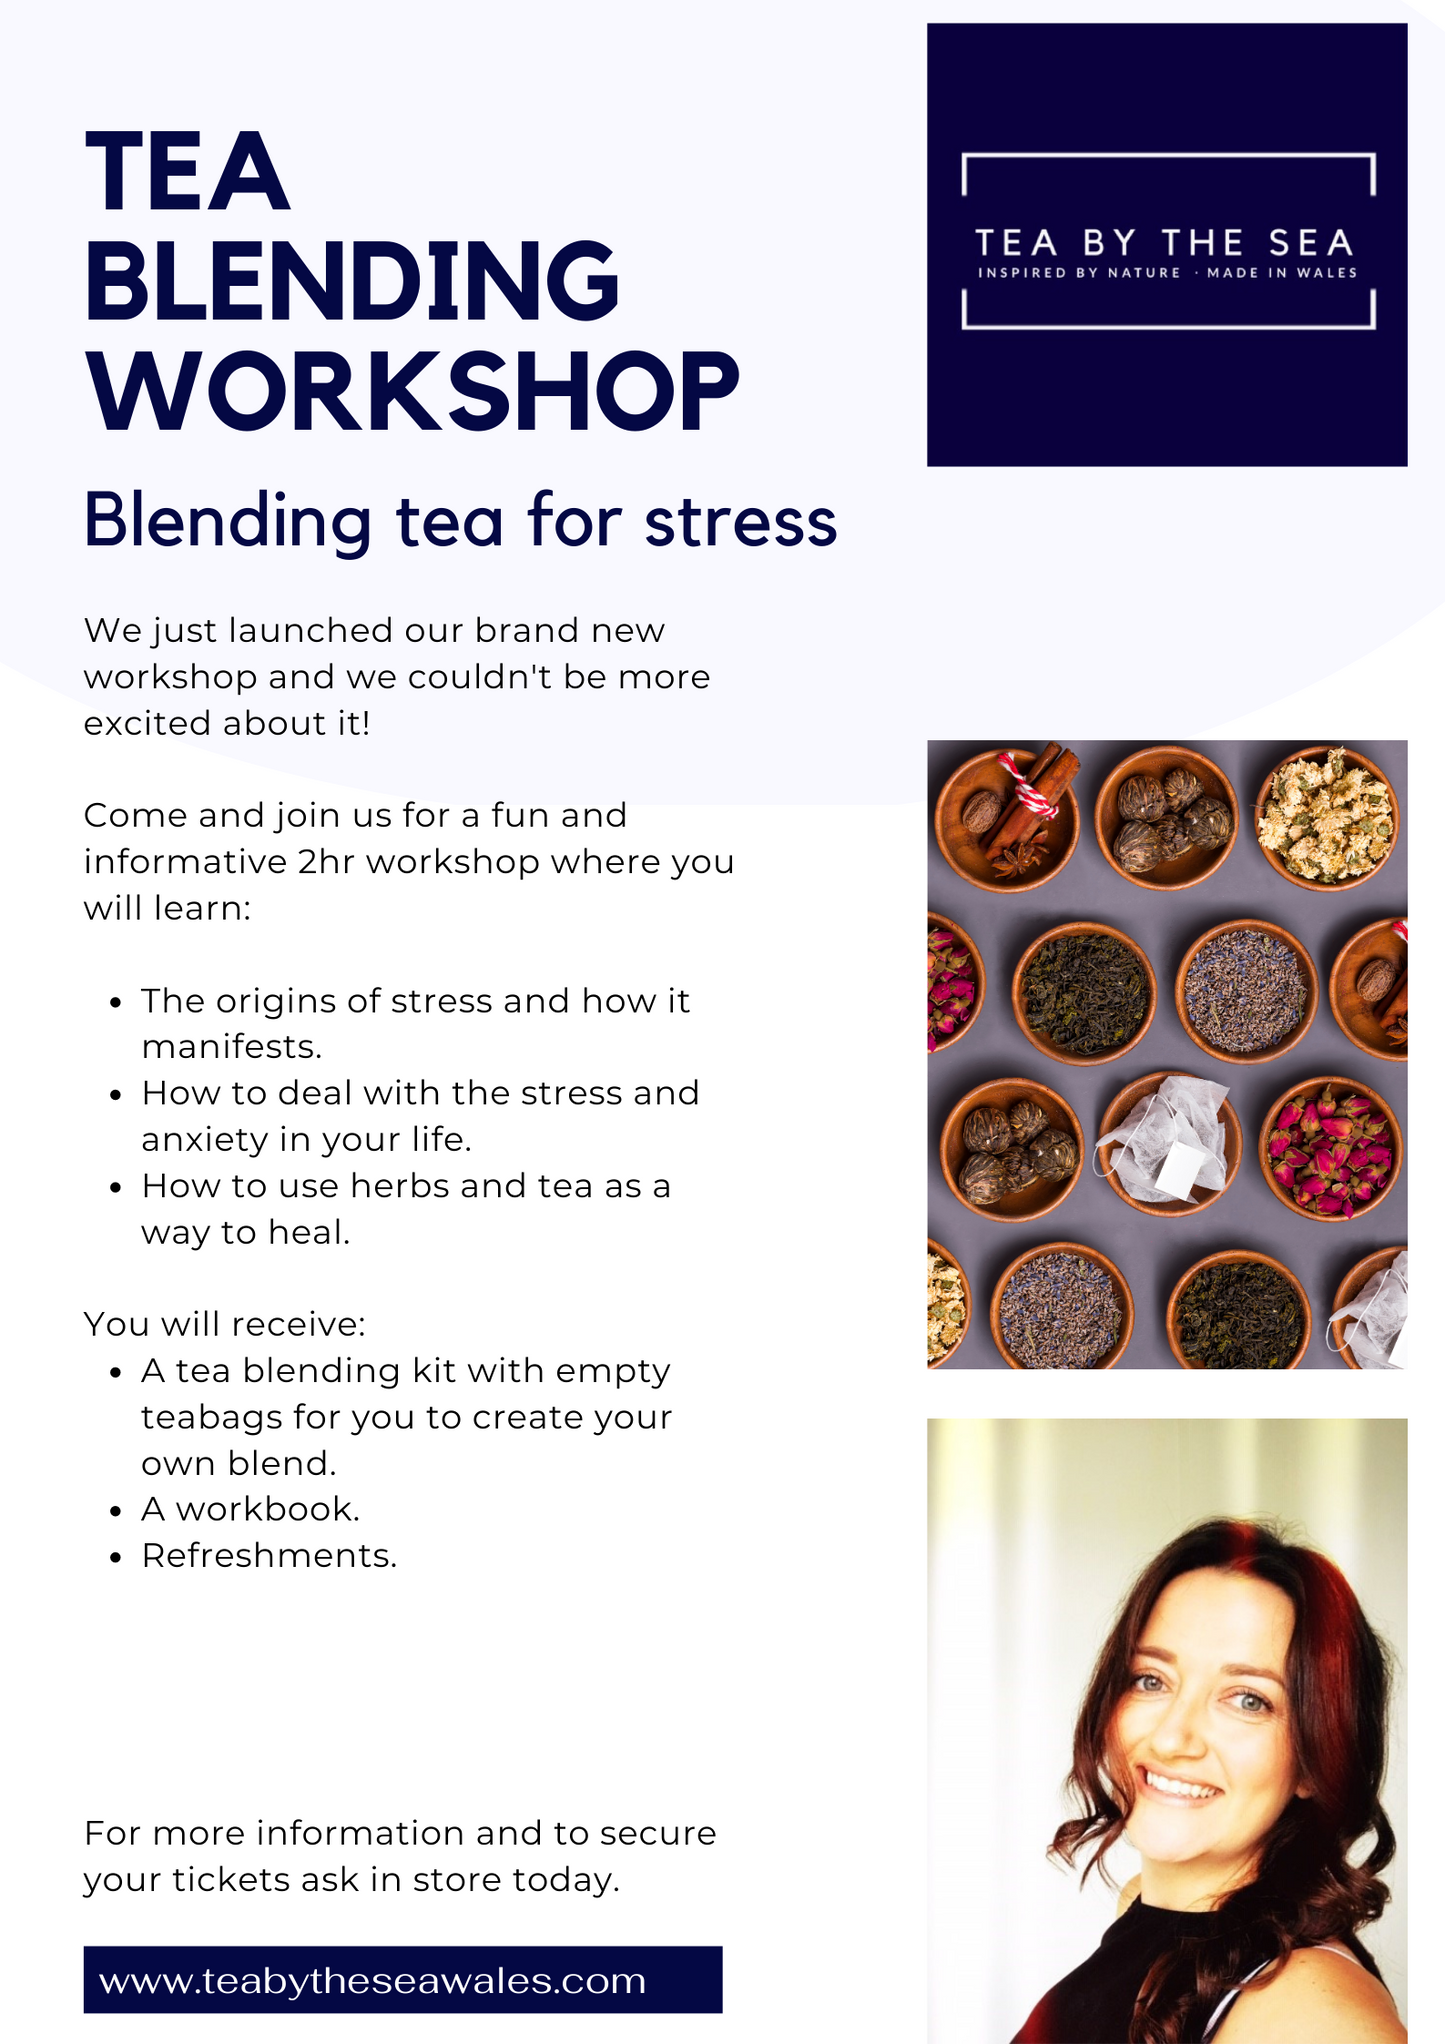 Tea Blending for Stress Workshop